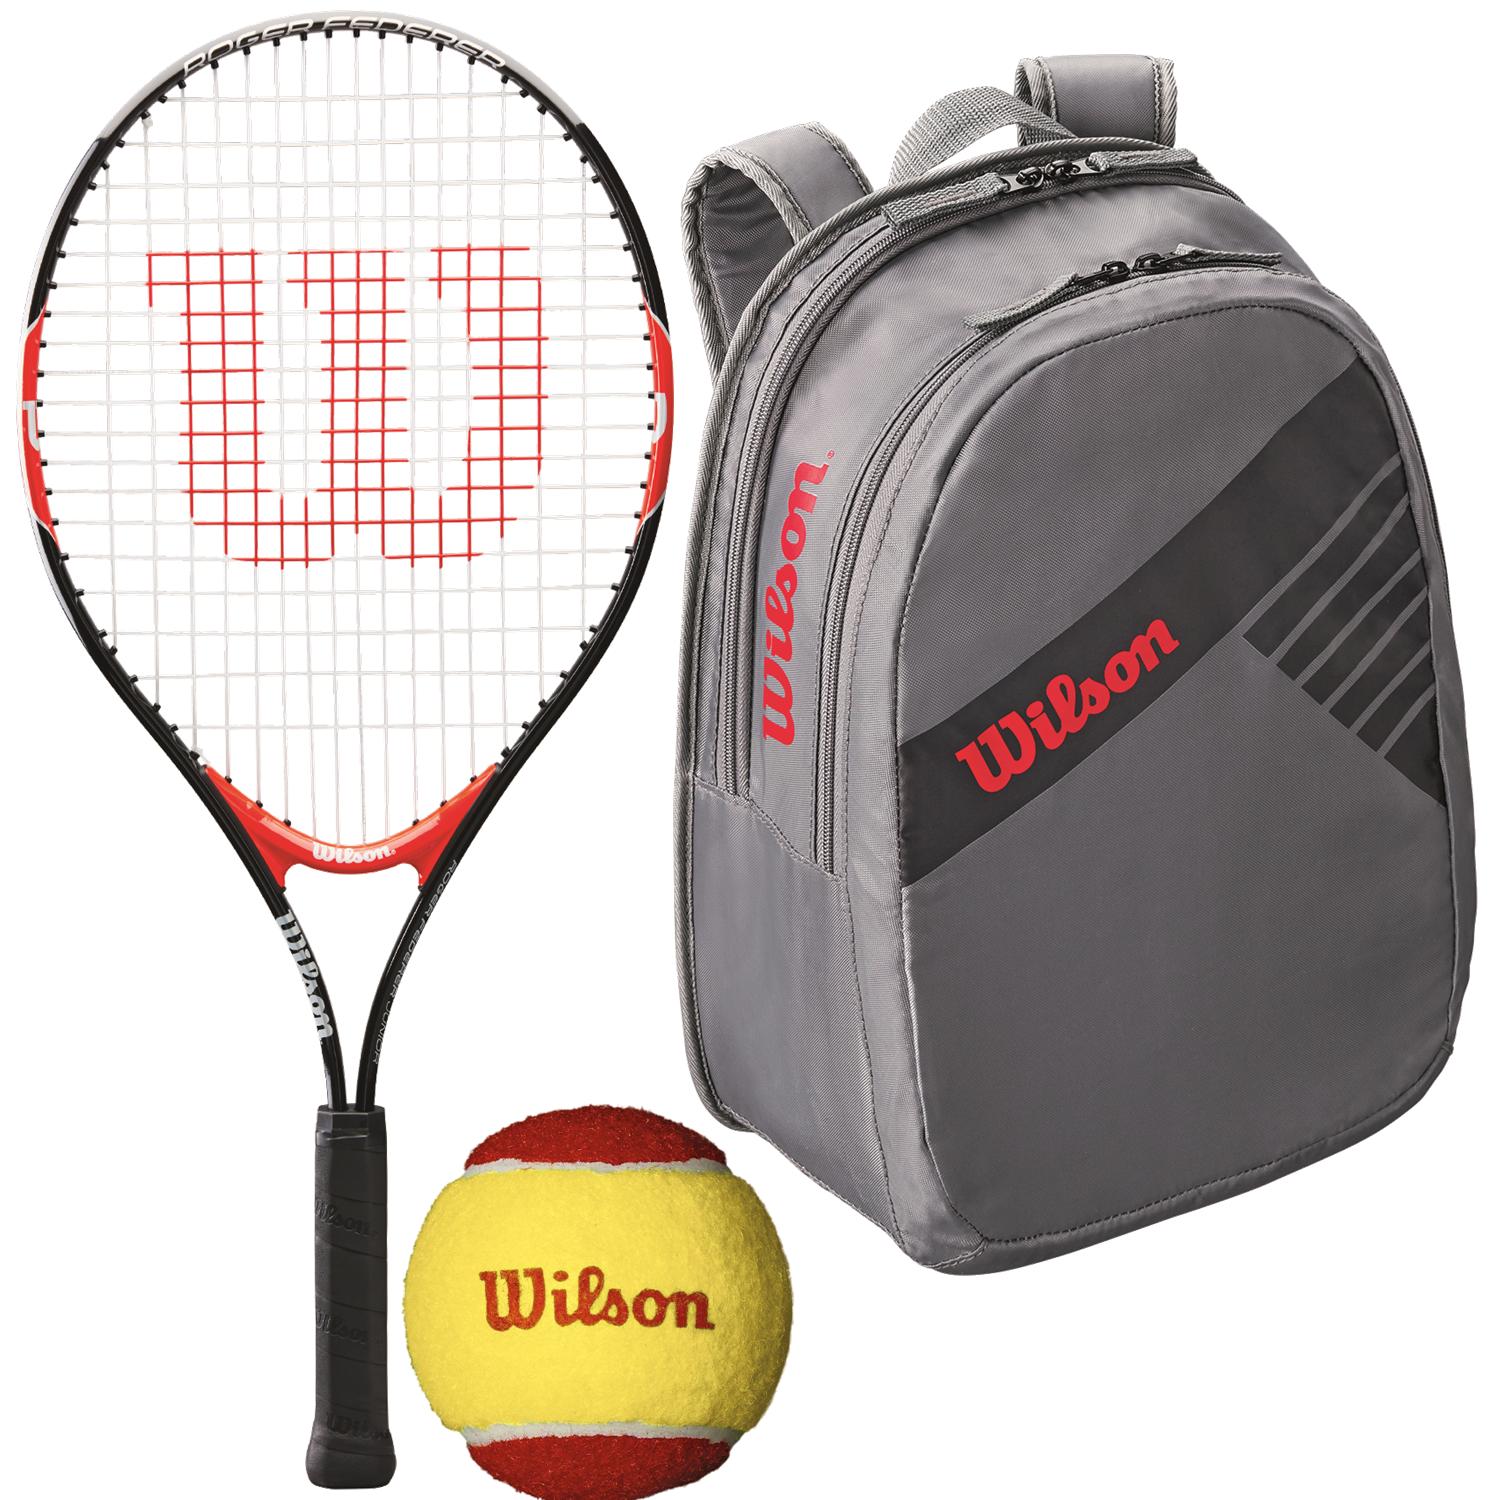 Wilson Roger Federer Junior Tennis Racquet, bundled with a Grey Junior Tennis Backpack and a 3-Pack of Red Felt Starter Tennis Balls